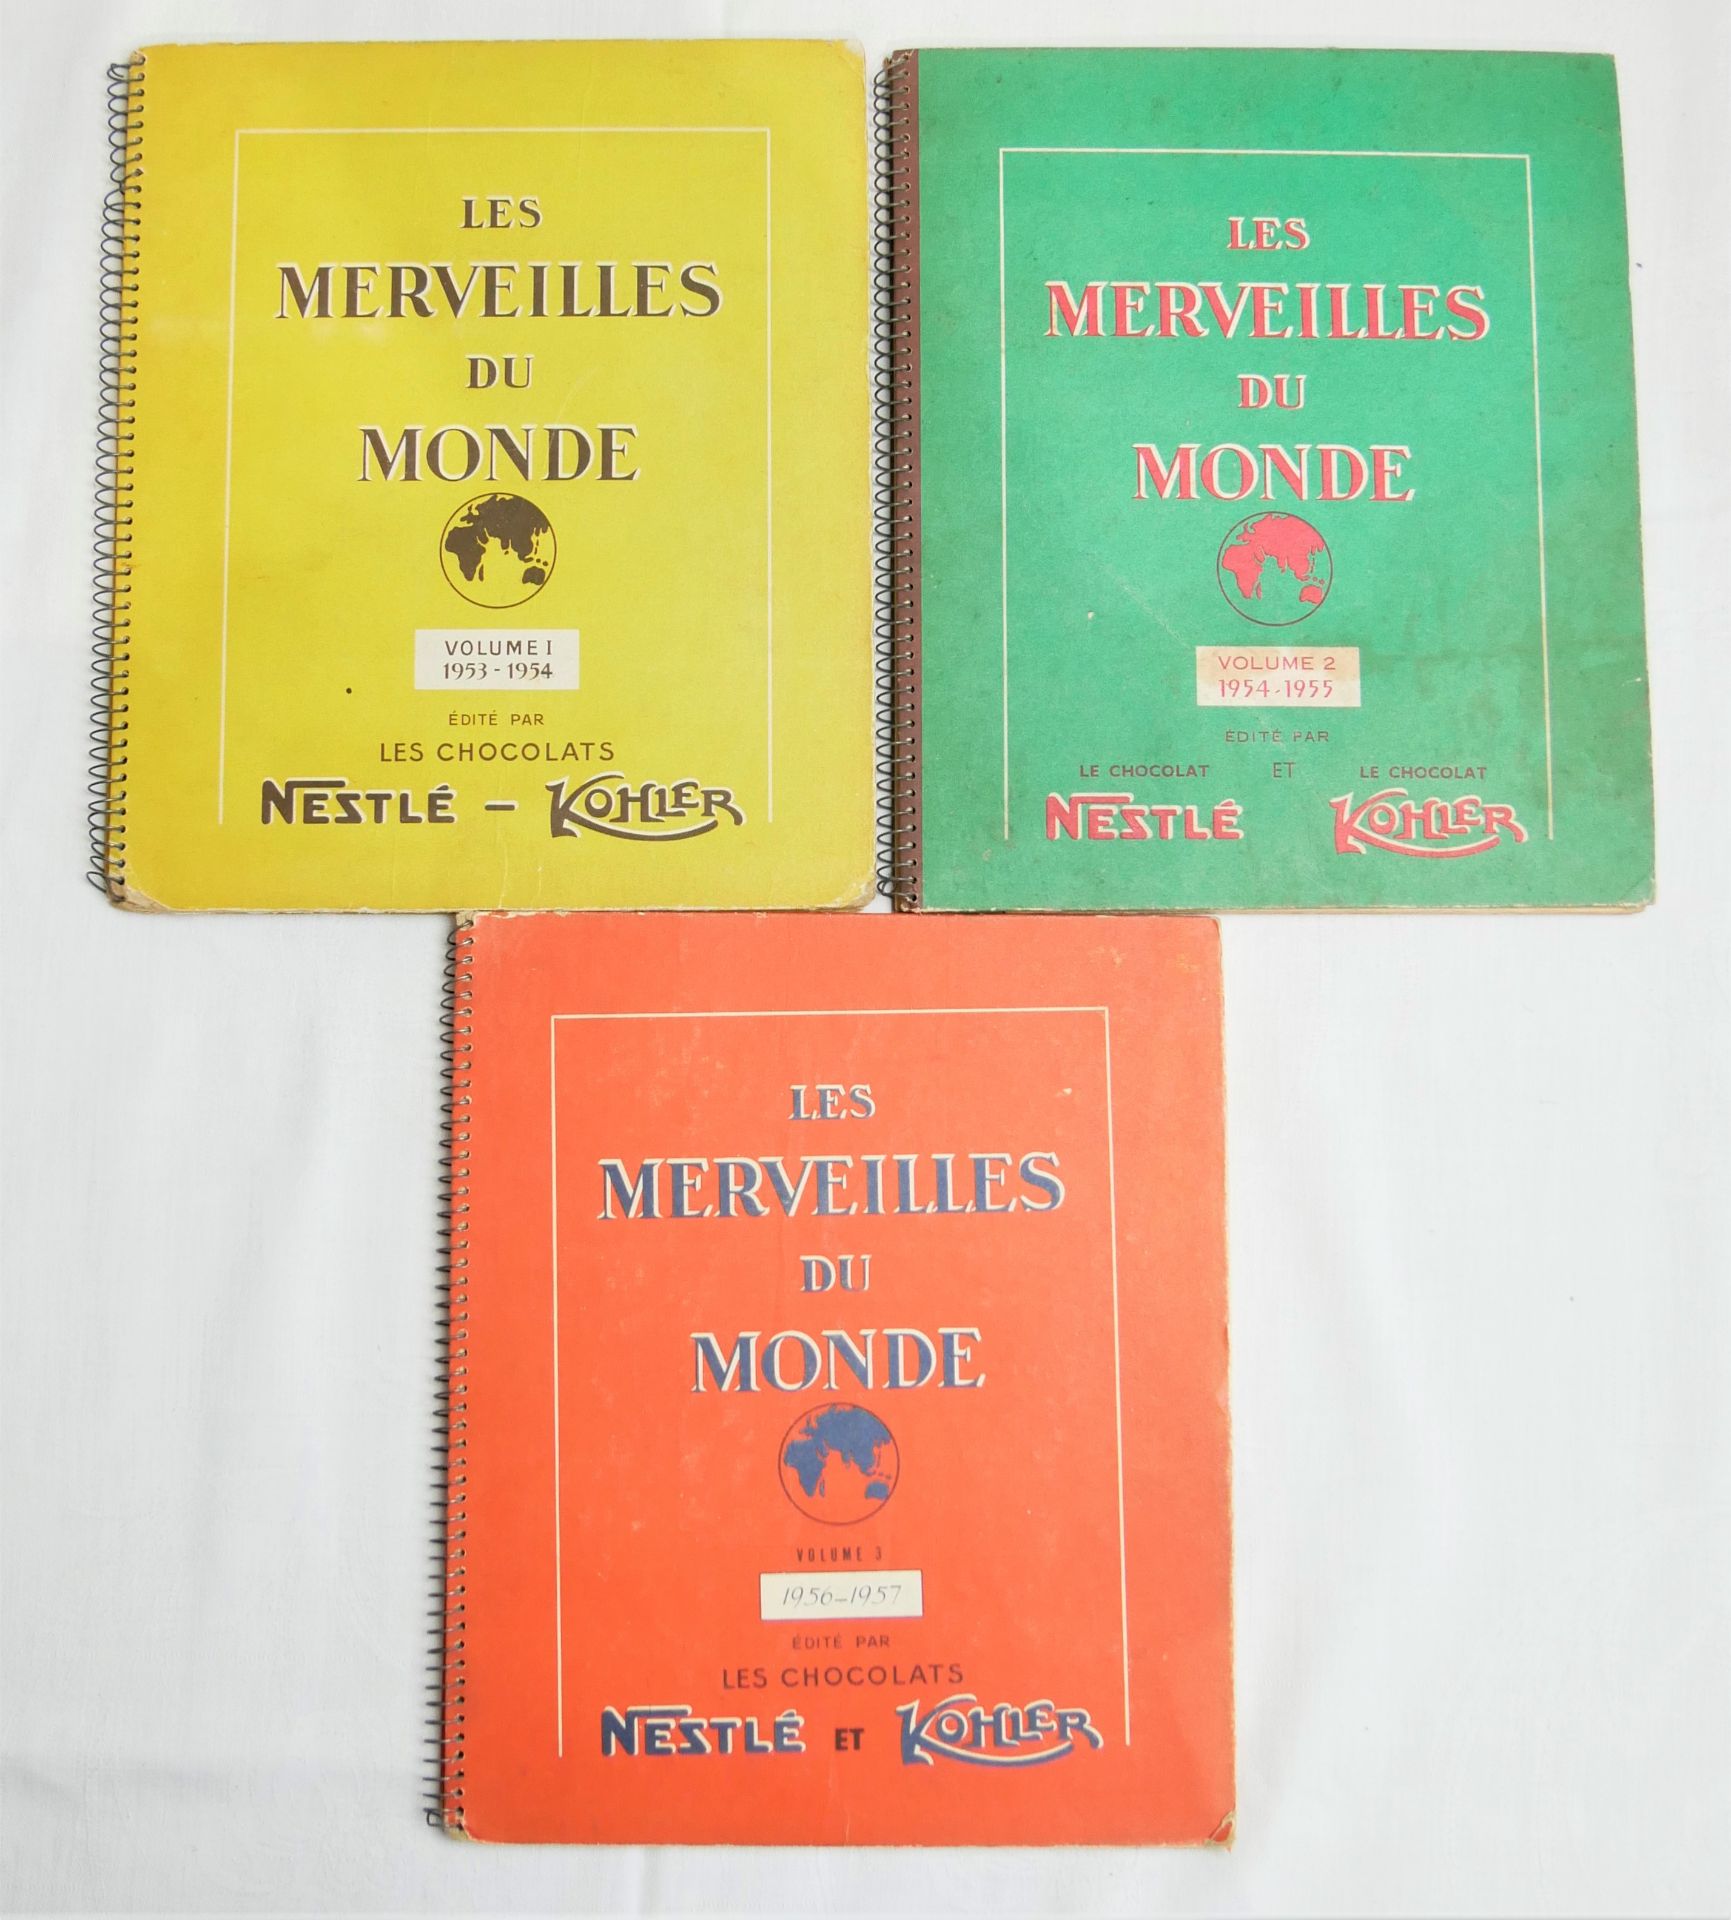 "Les Merveilles Du Monde", Volume I 1953-1954, Volume II 1956- 1957 und Volume III 1956-1957,